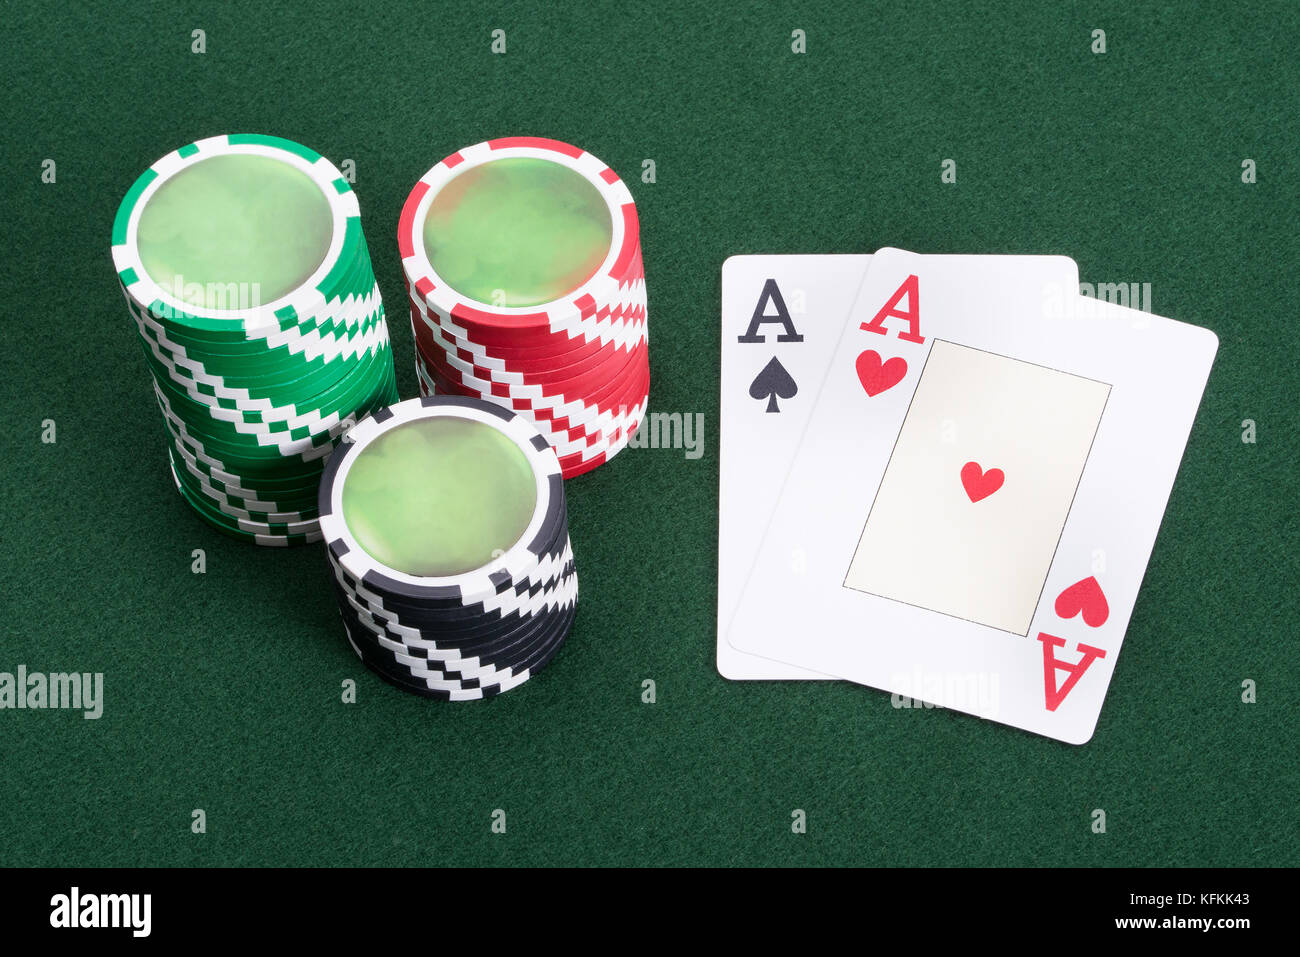 Deux as représentant gagner au blackjack casino Jeu Banque D'Images